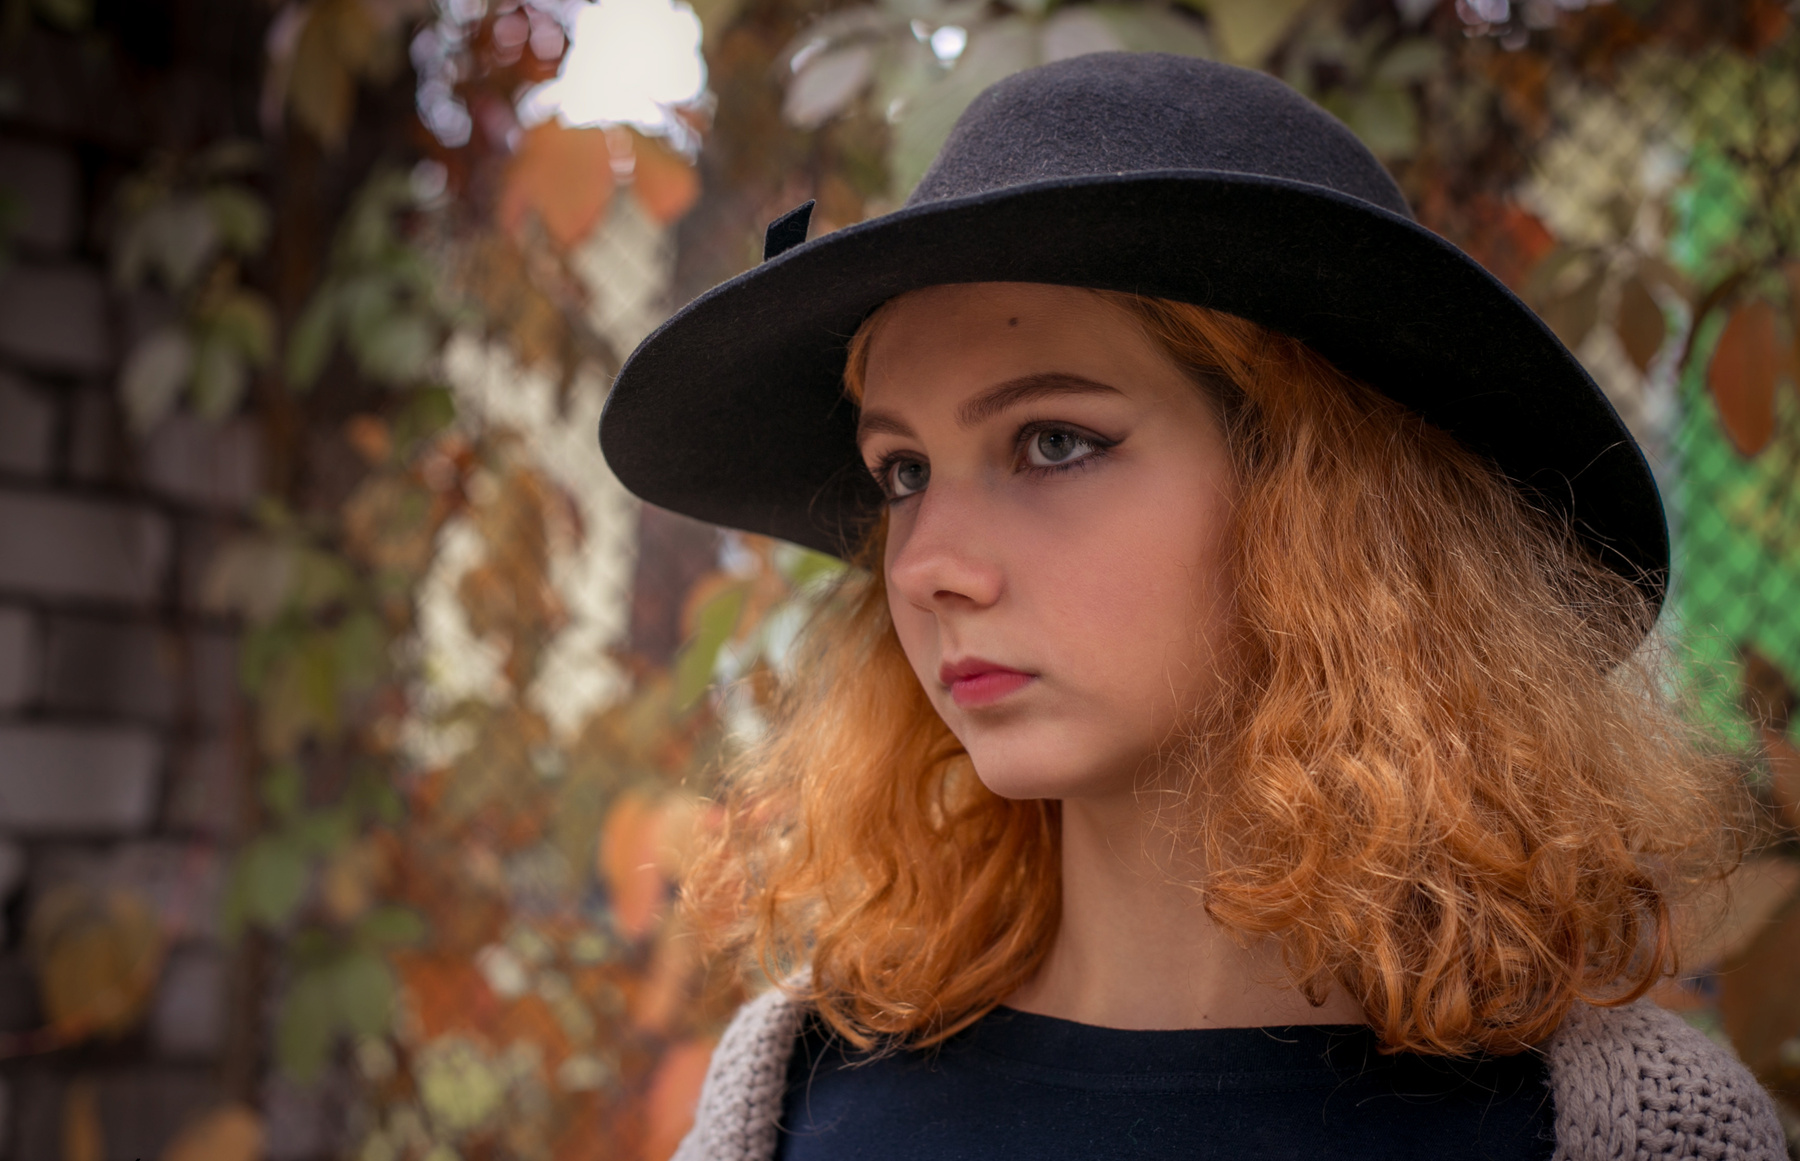 Ксения Девушка шляпа осень листья